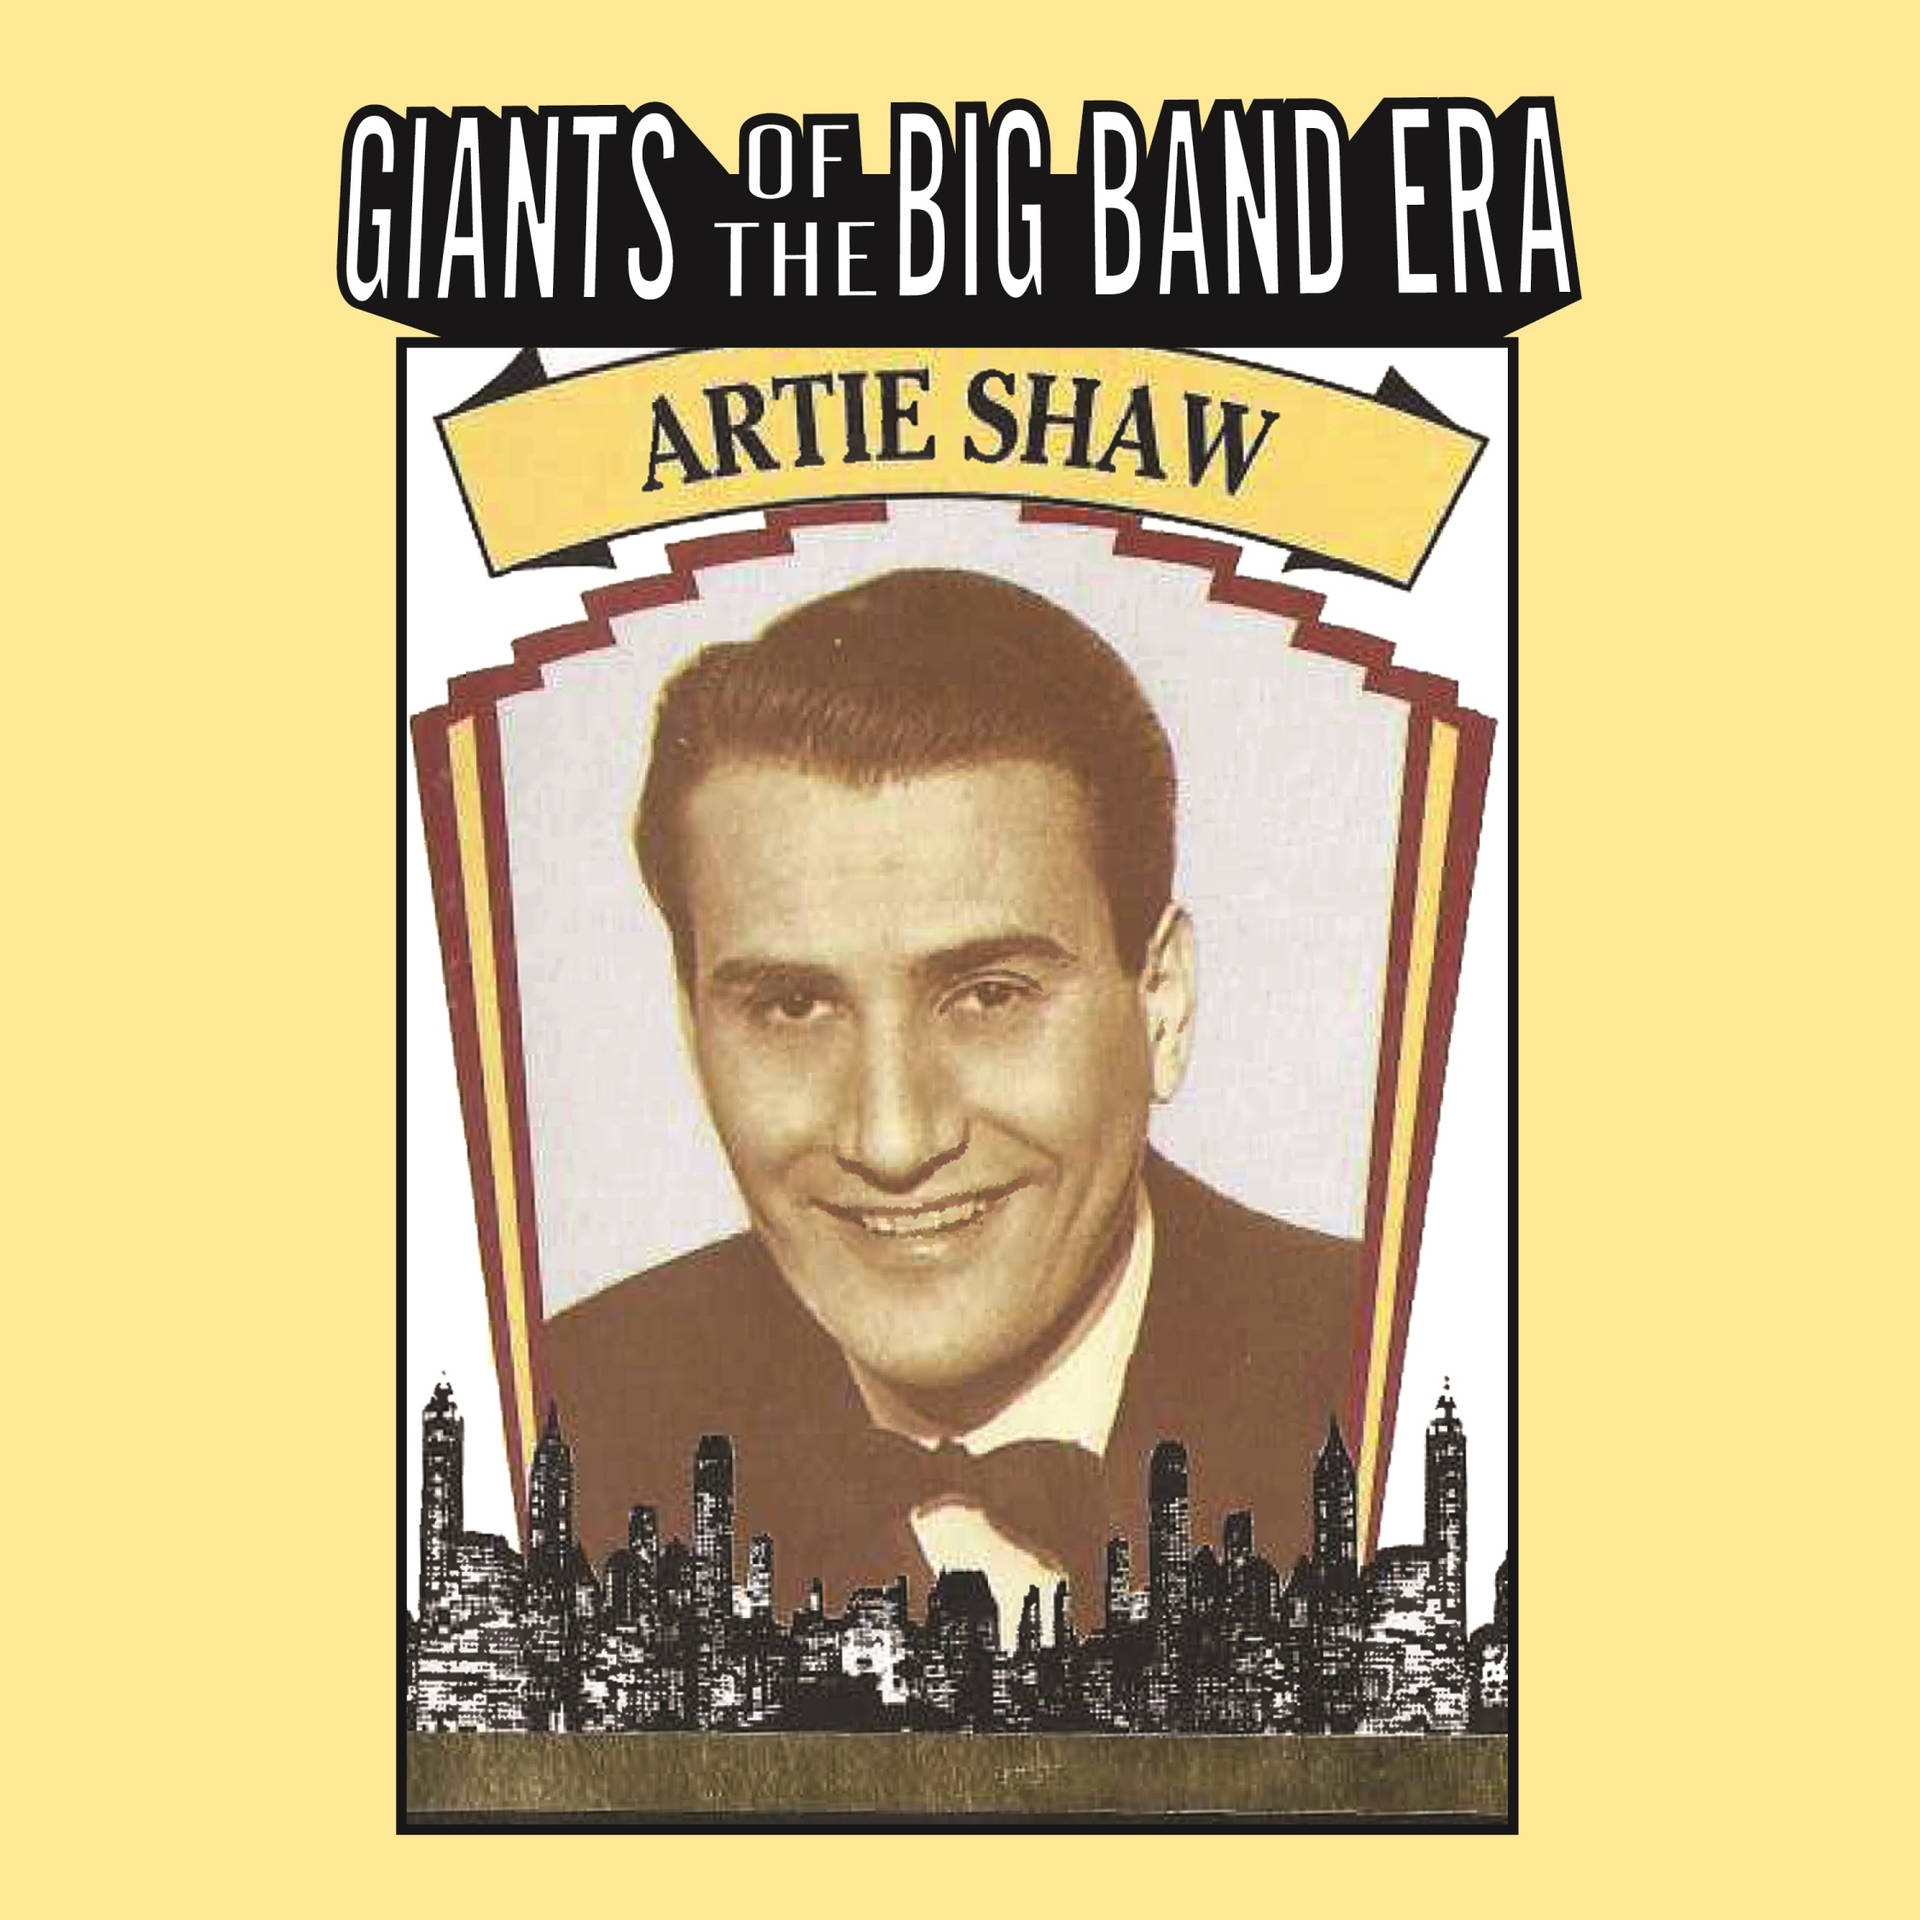 Artieshaw - Riesen Der Big Band Ära 1990 Cover Wallpaper